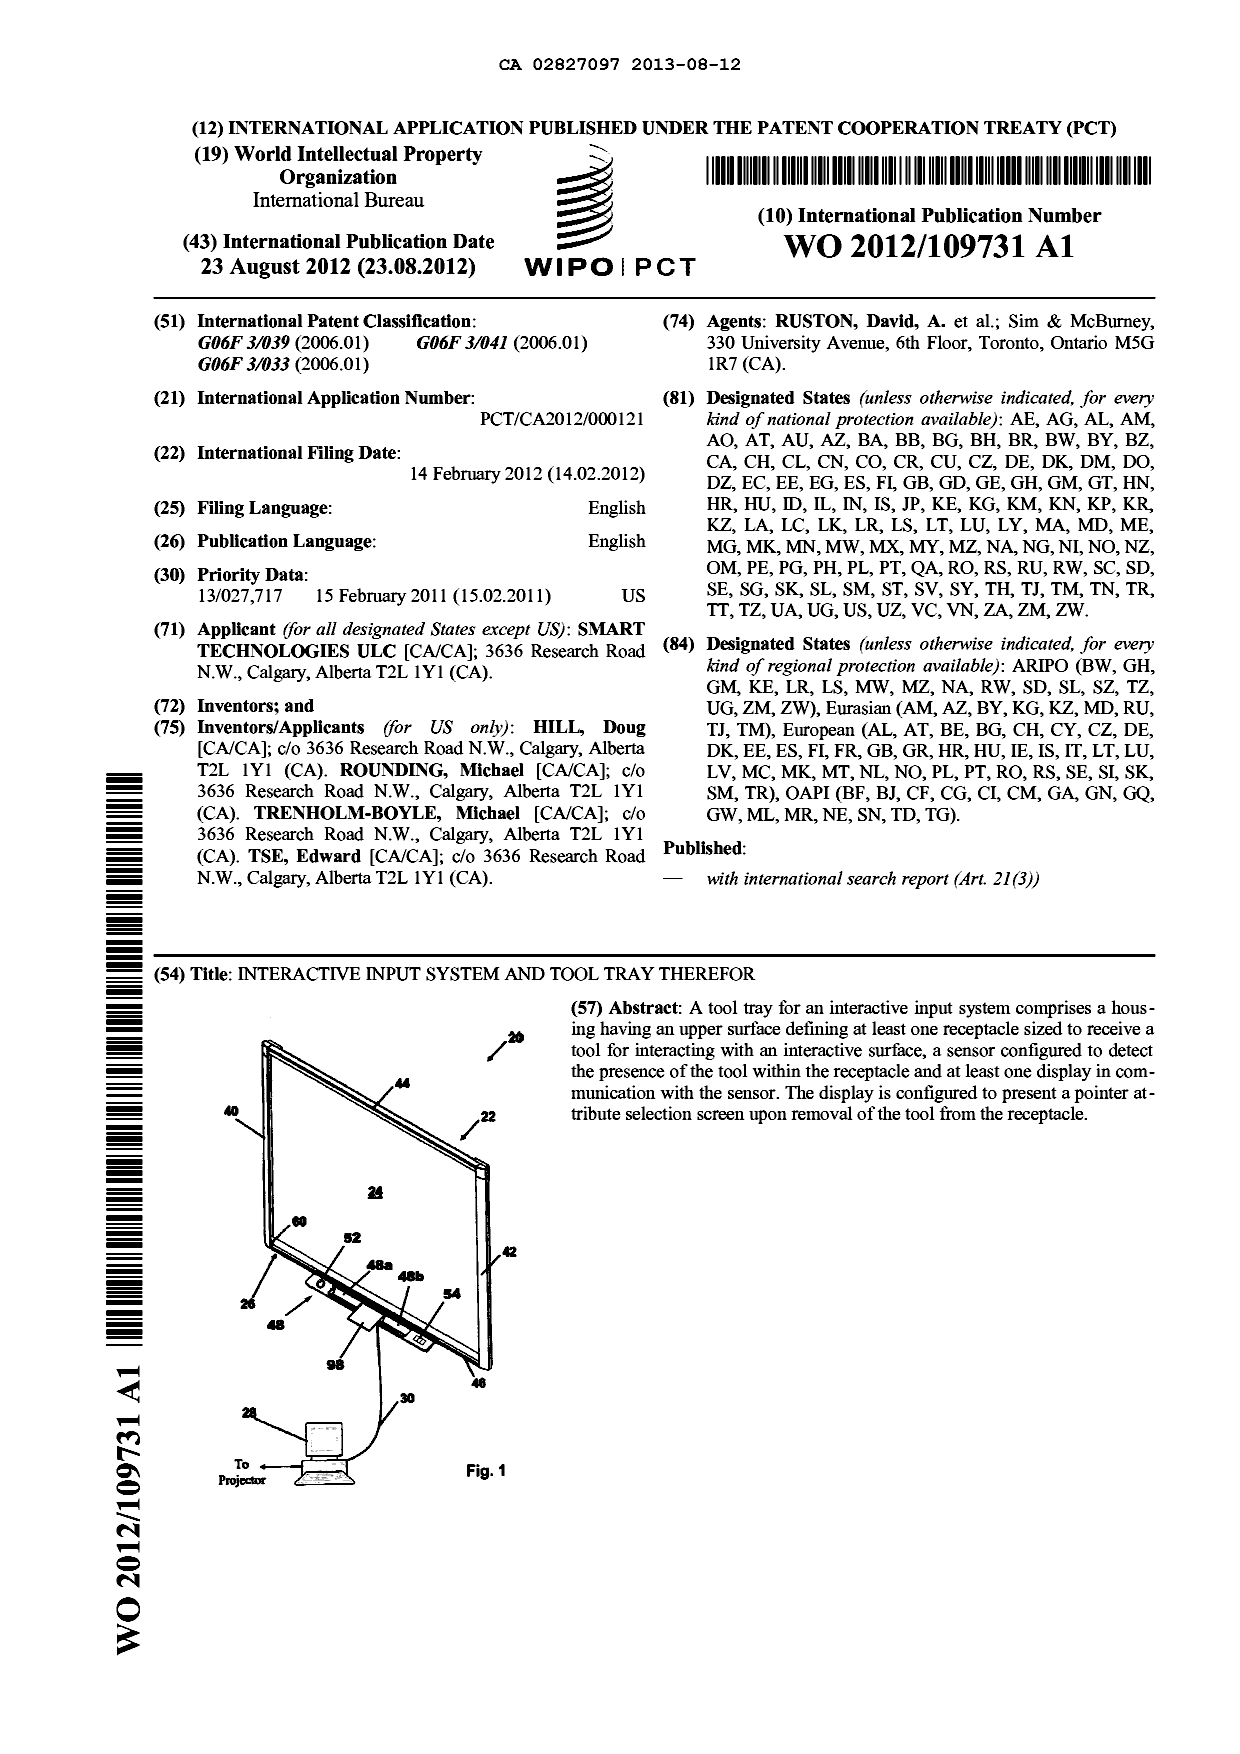 Document de brevet canadien 2827097. Abrégé 20130812. Image 1 de 1